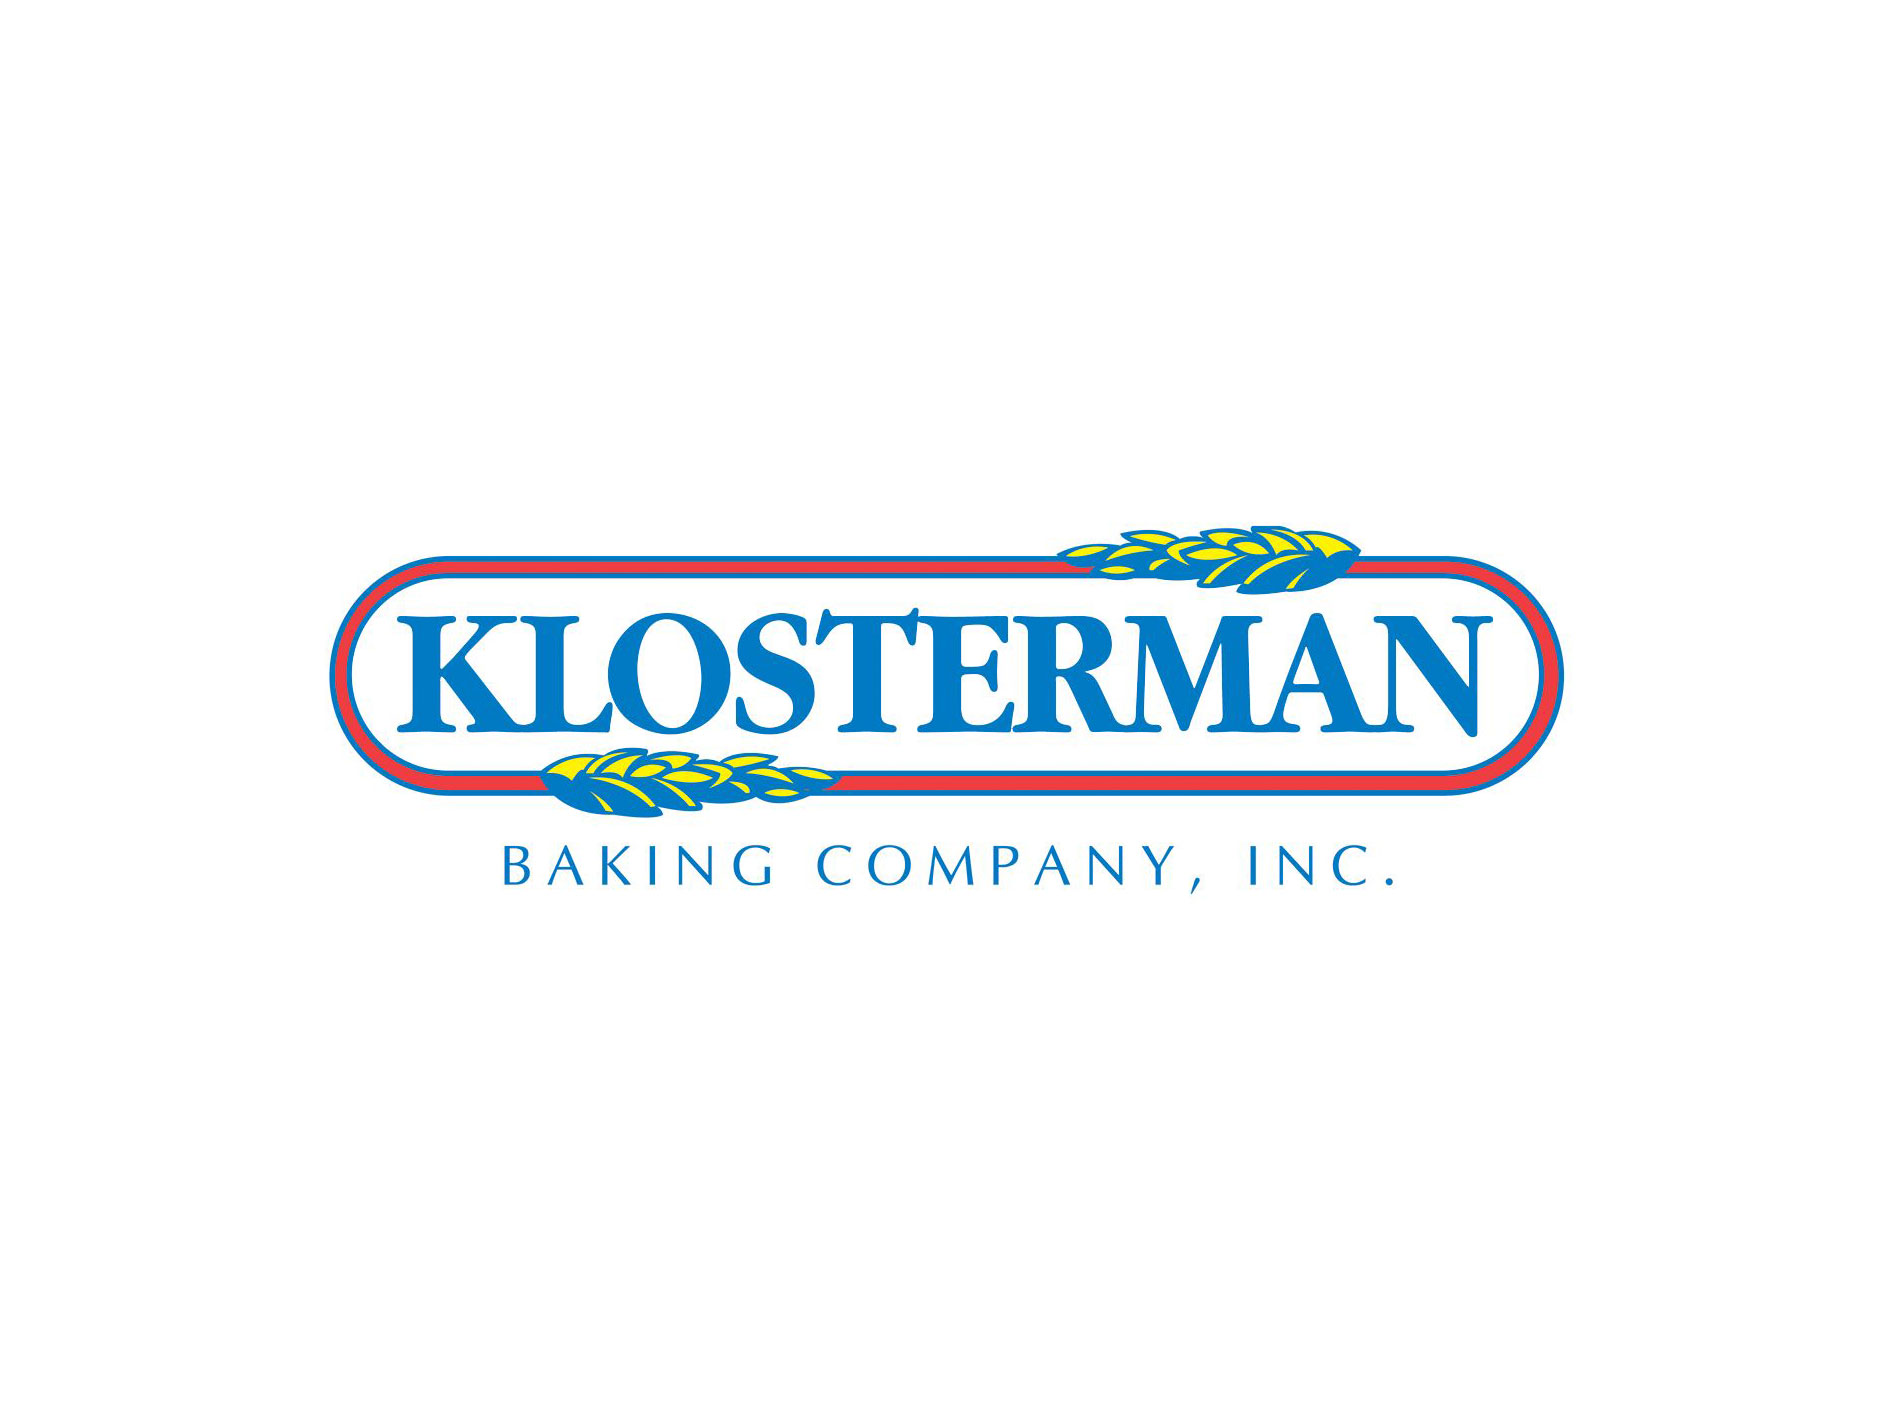 klosterman-baking-company